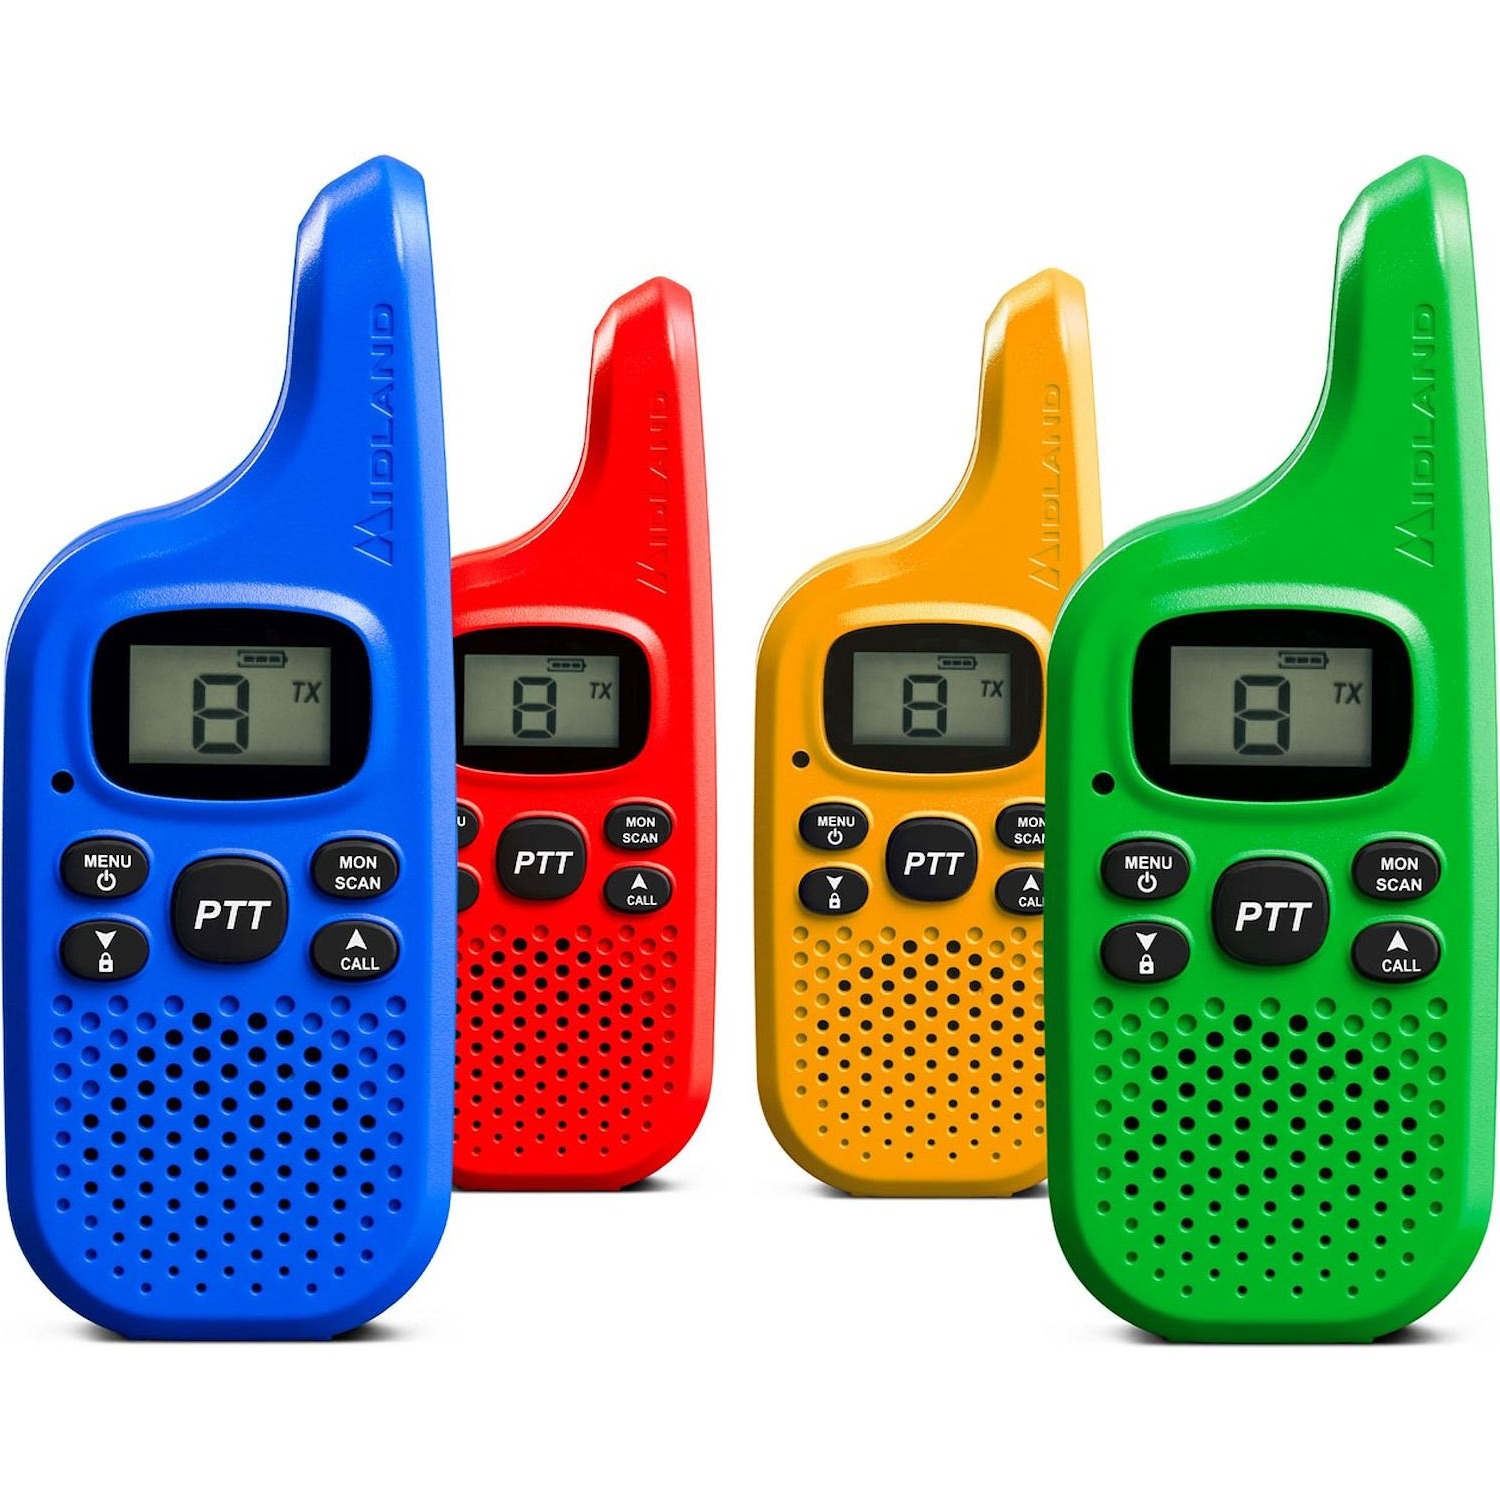 Immagine per Kit 4 ricetrasmittenti walkie-talkie Midland XT-5 C142501 da DIMOStore